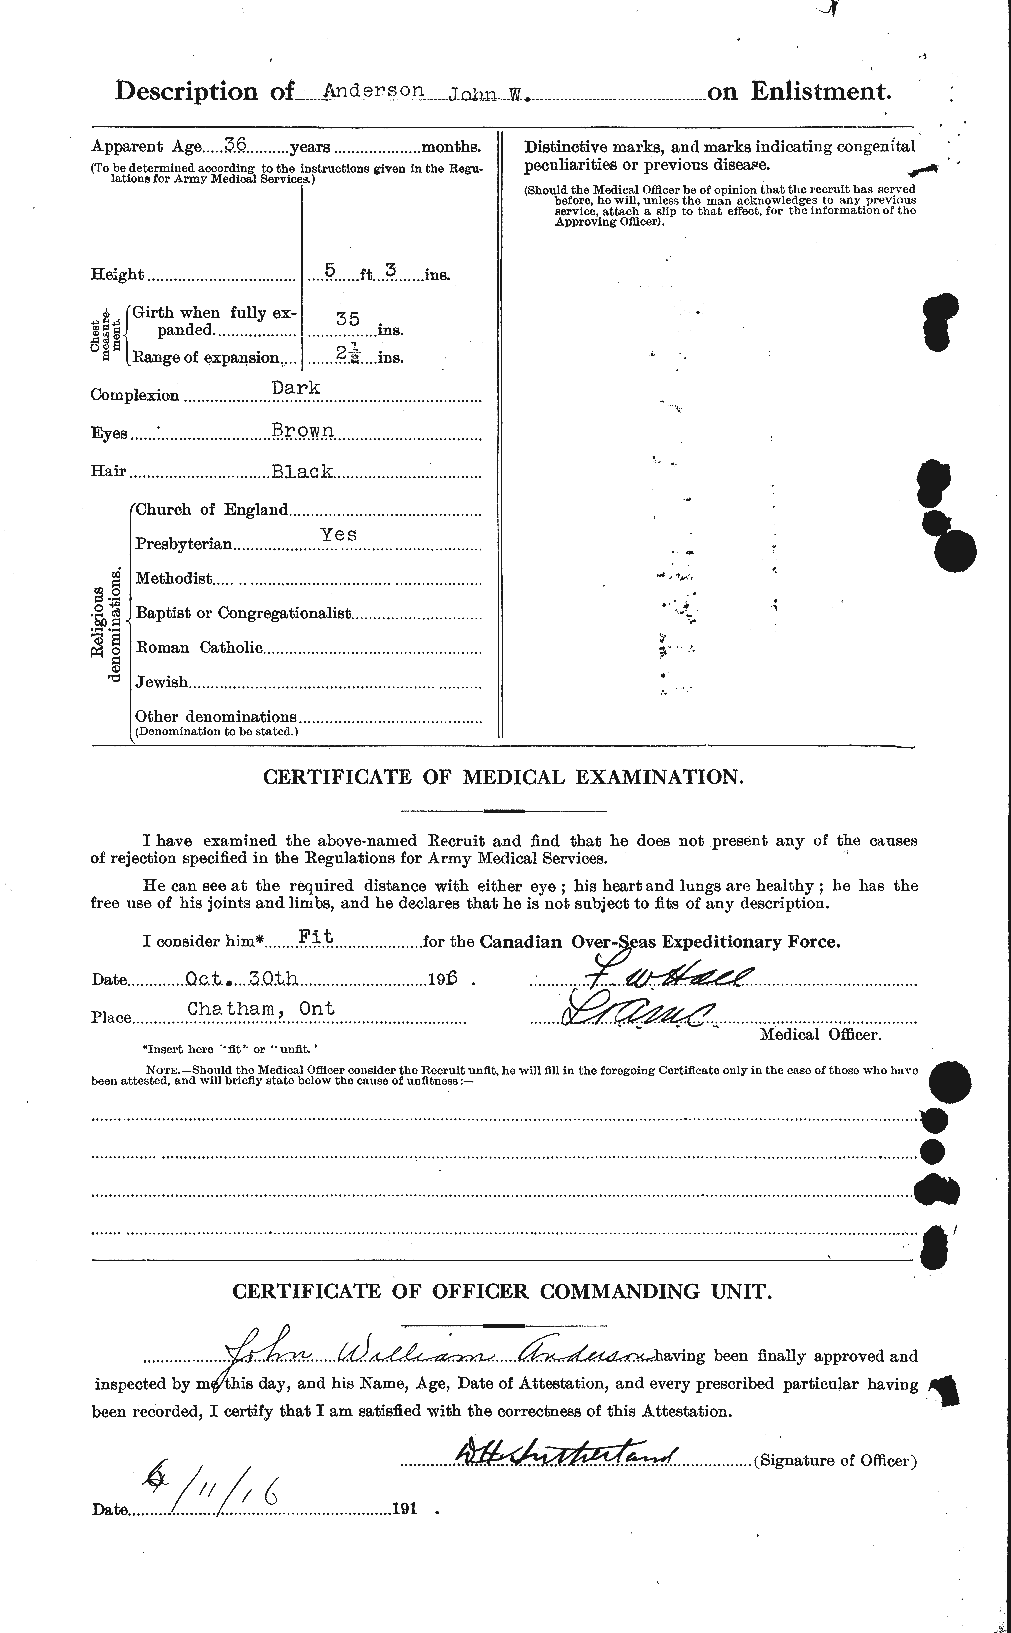 Dossiers du Personnel de la Première Guerre mondiale - CEC 207594b